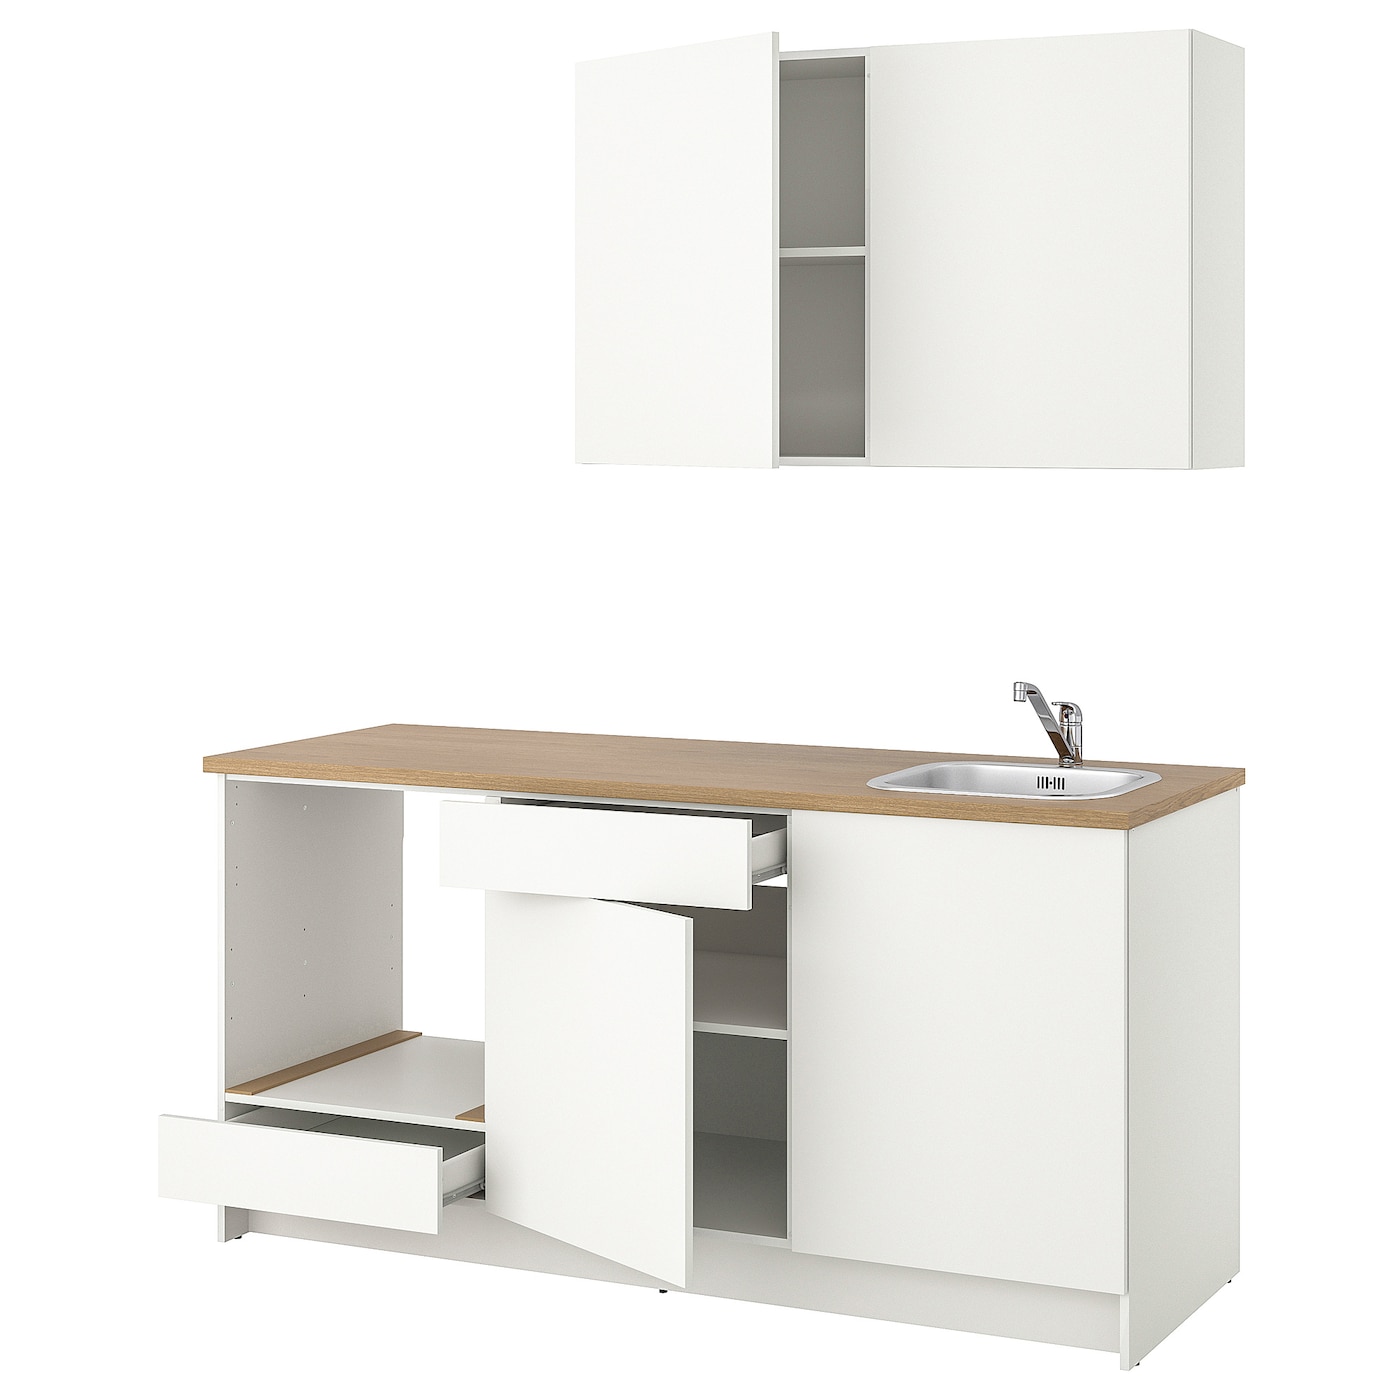 Кухонная комбинация для хранения вещей - KNOXHULT IKEA/ КНОКСХУЛЬТ ИКЕА, 180х61х220 см, бежевый/белый